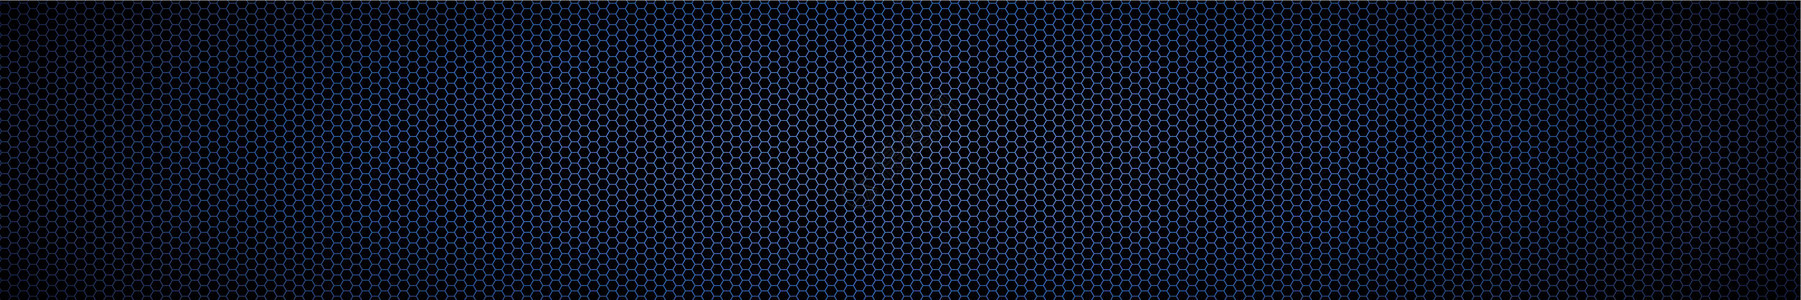 蓝色和黑色碳纤维的全景质体编织技术织物墙纸控制板奢华网格网络金属材料图片